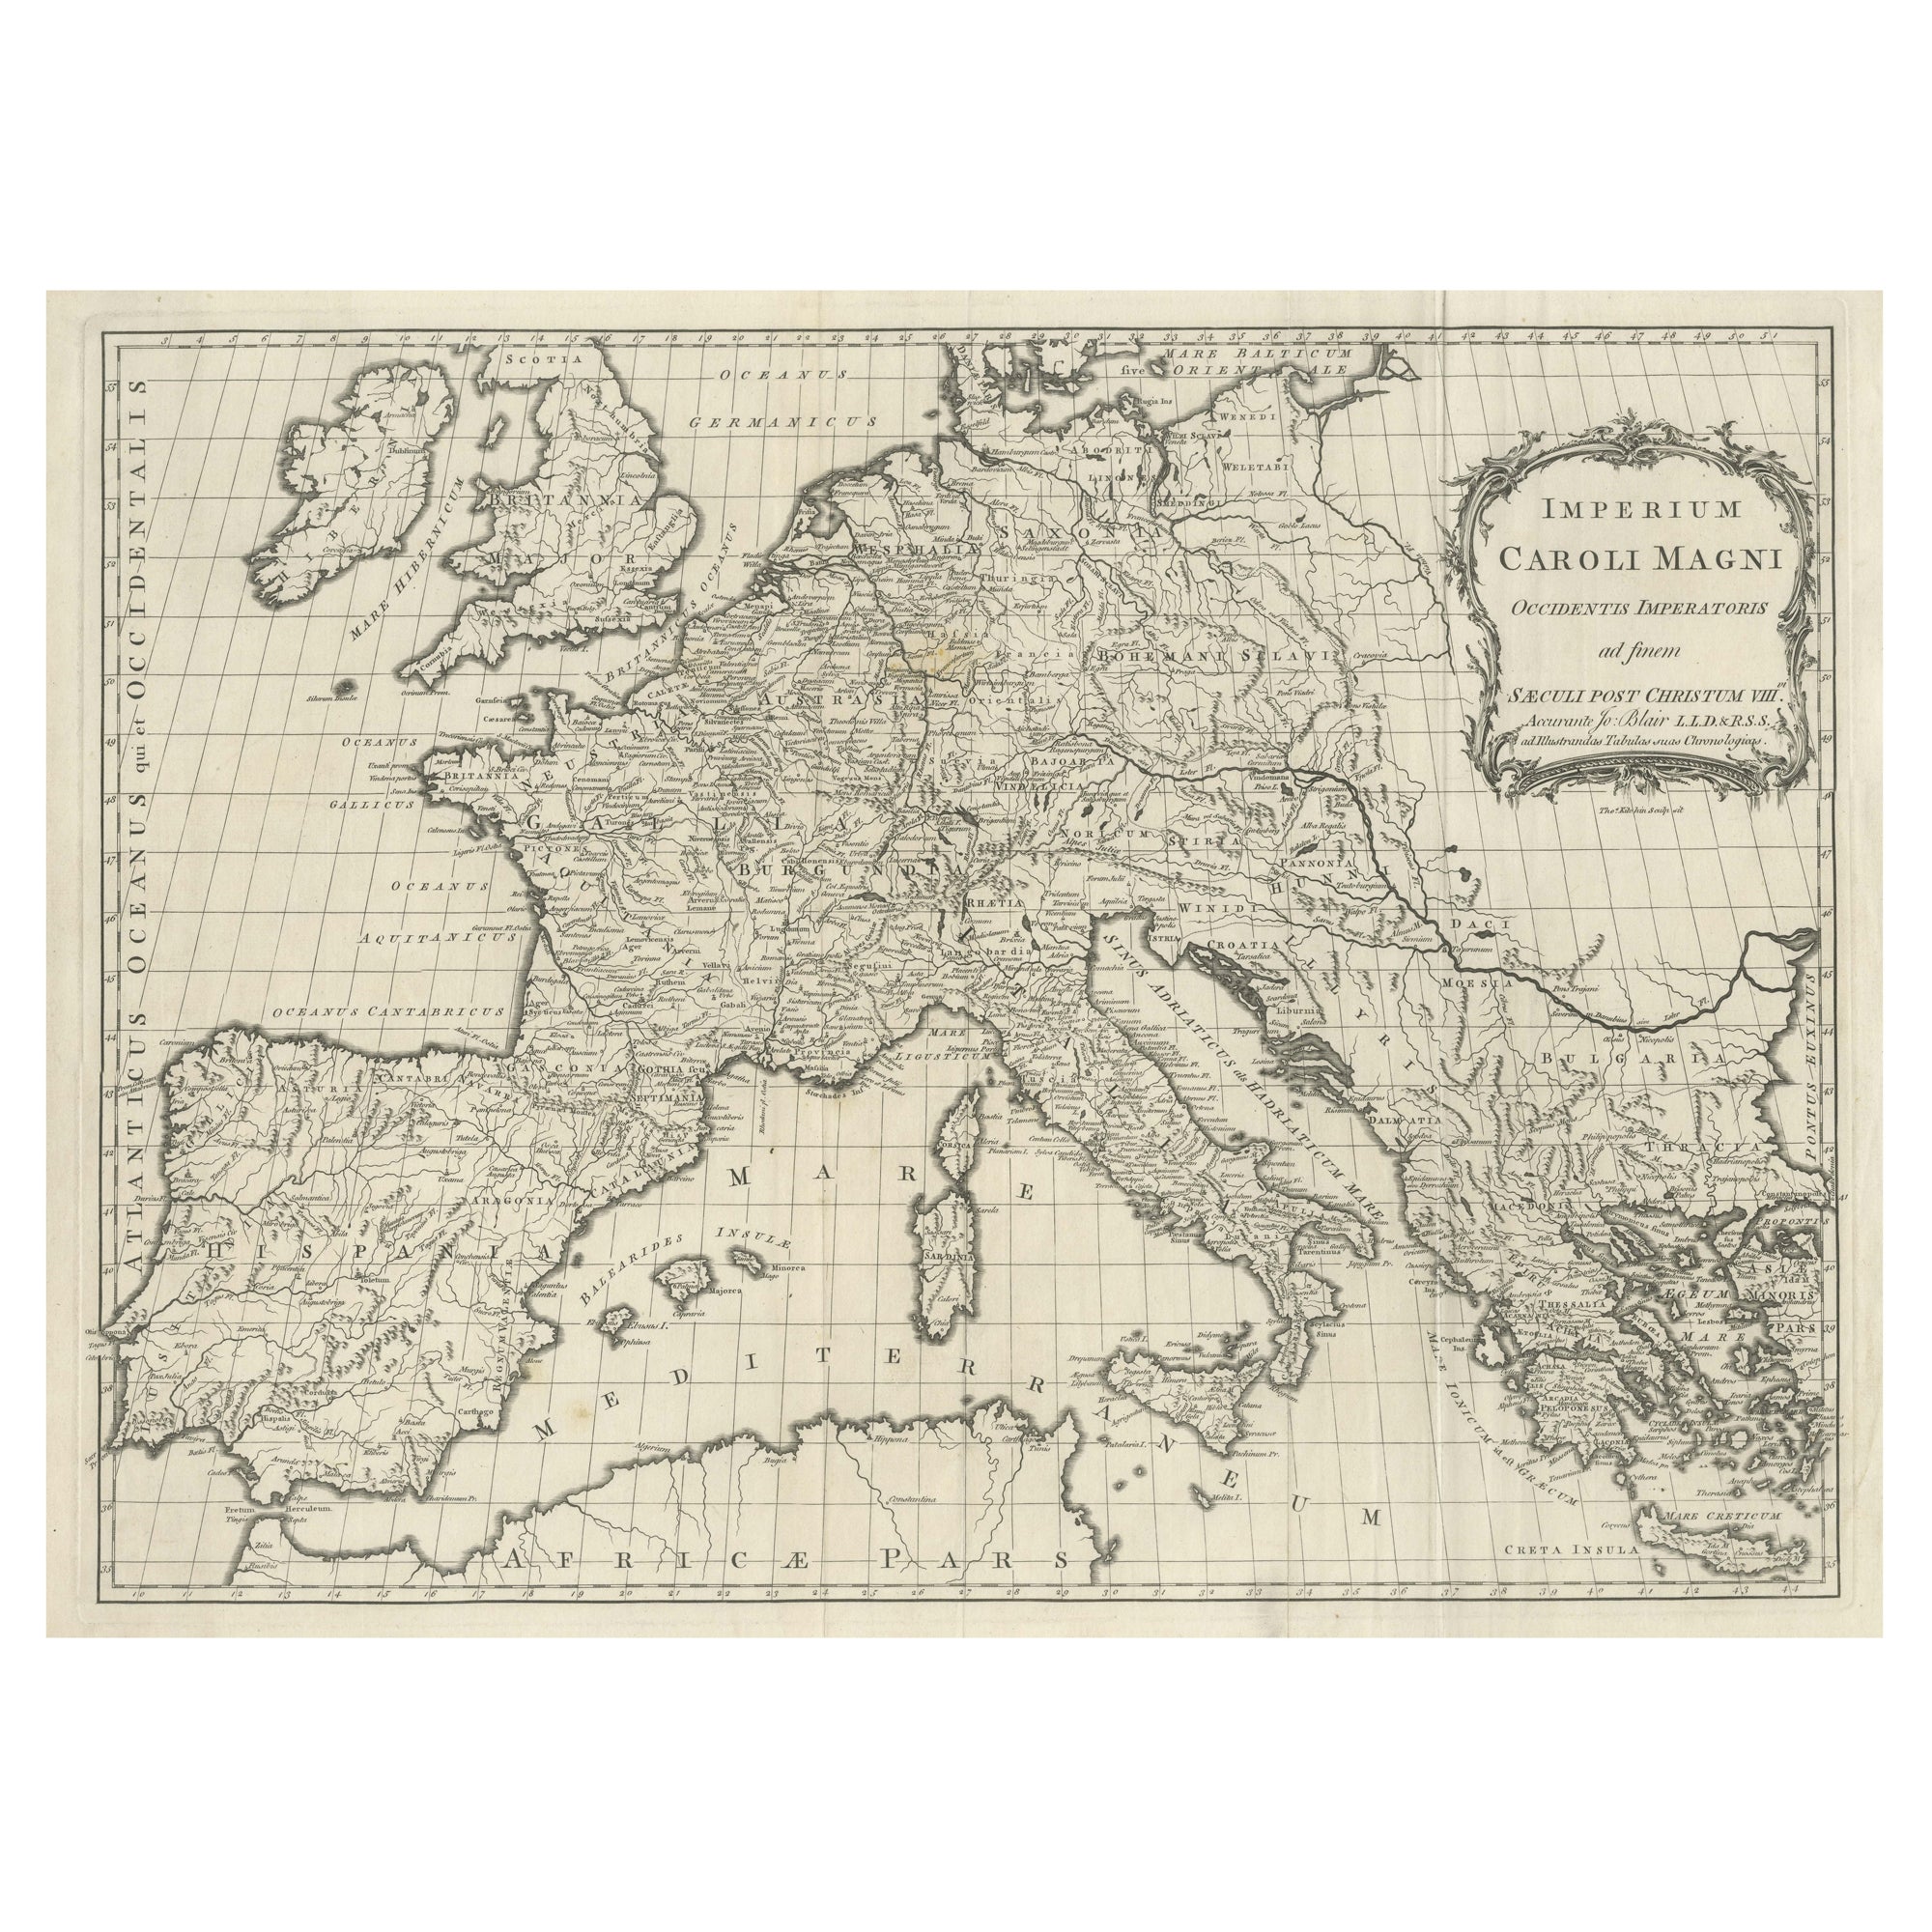 Große antike Karte von Europa, die das Empire von Charlemagne zeigt